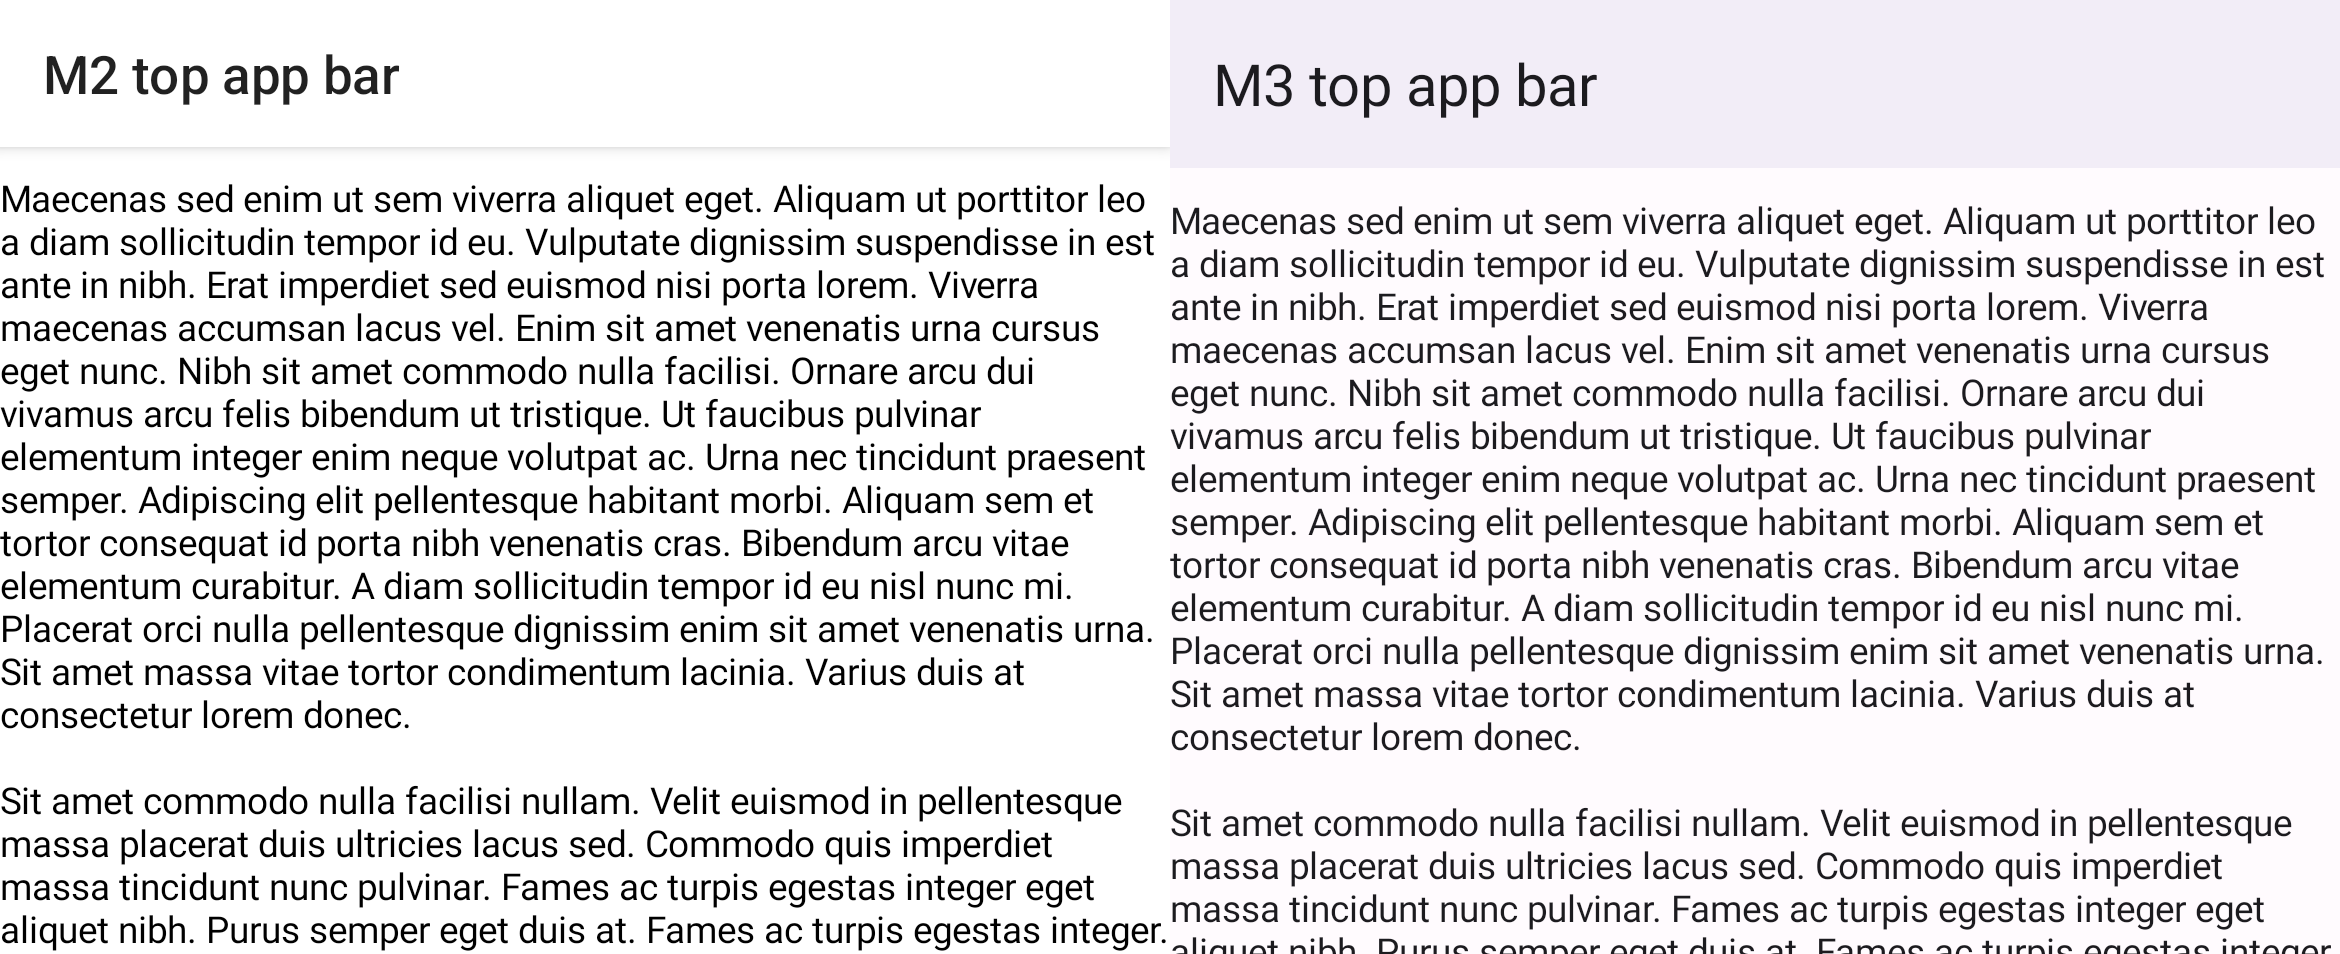 Comparação do scaffold do M2 e M3 com a barra de apps superior e a lista de rolagem